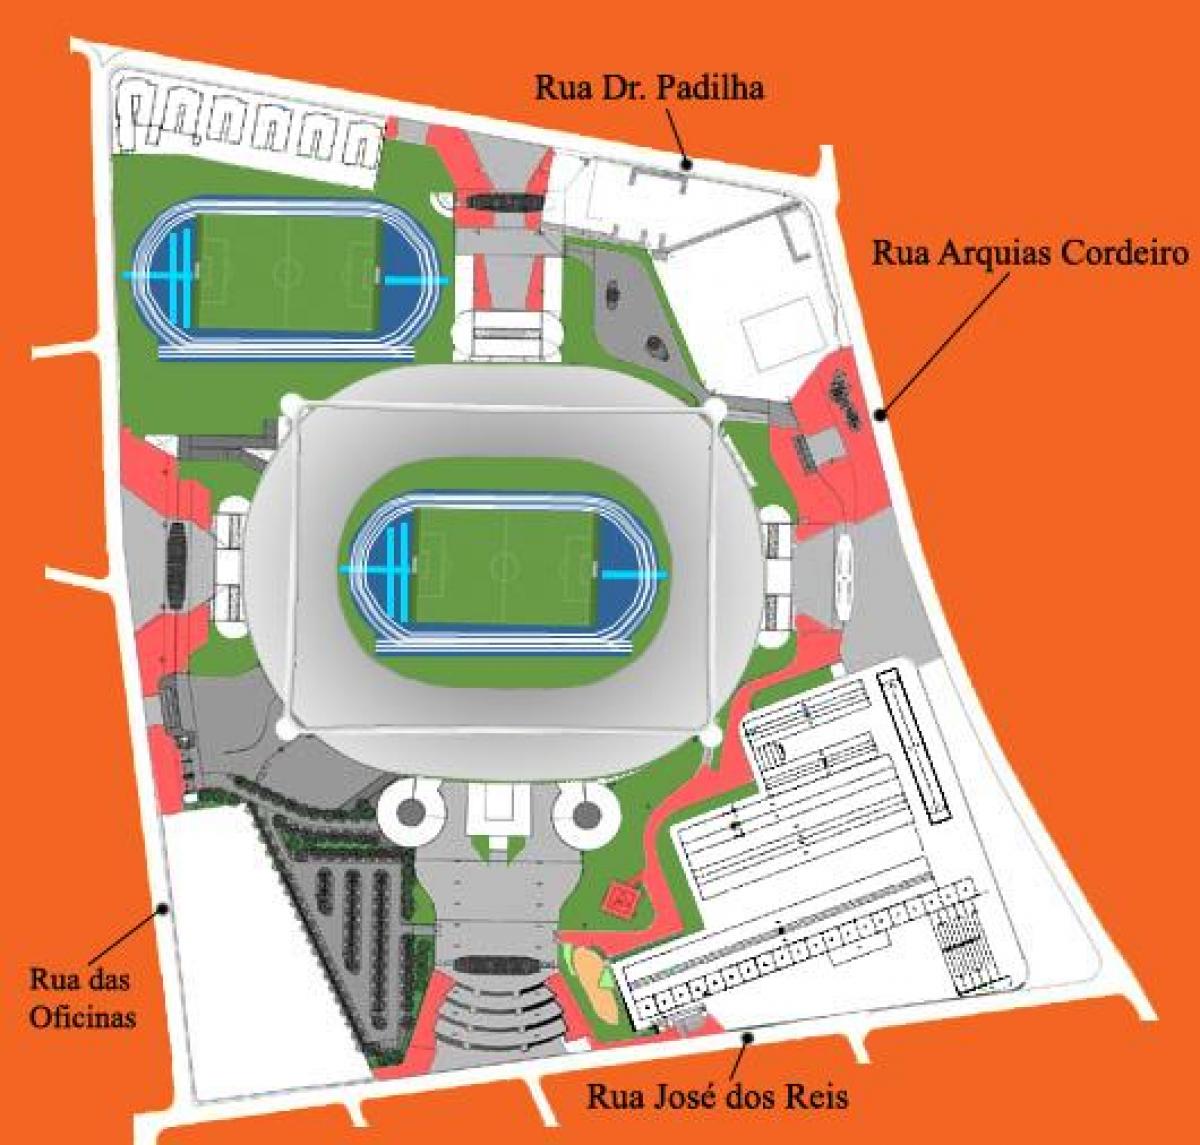 Peta dari stadion Engenhão